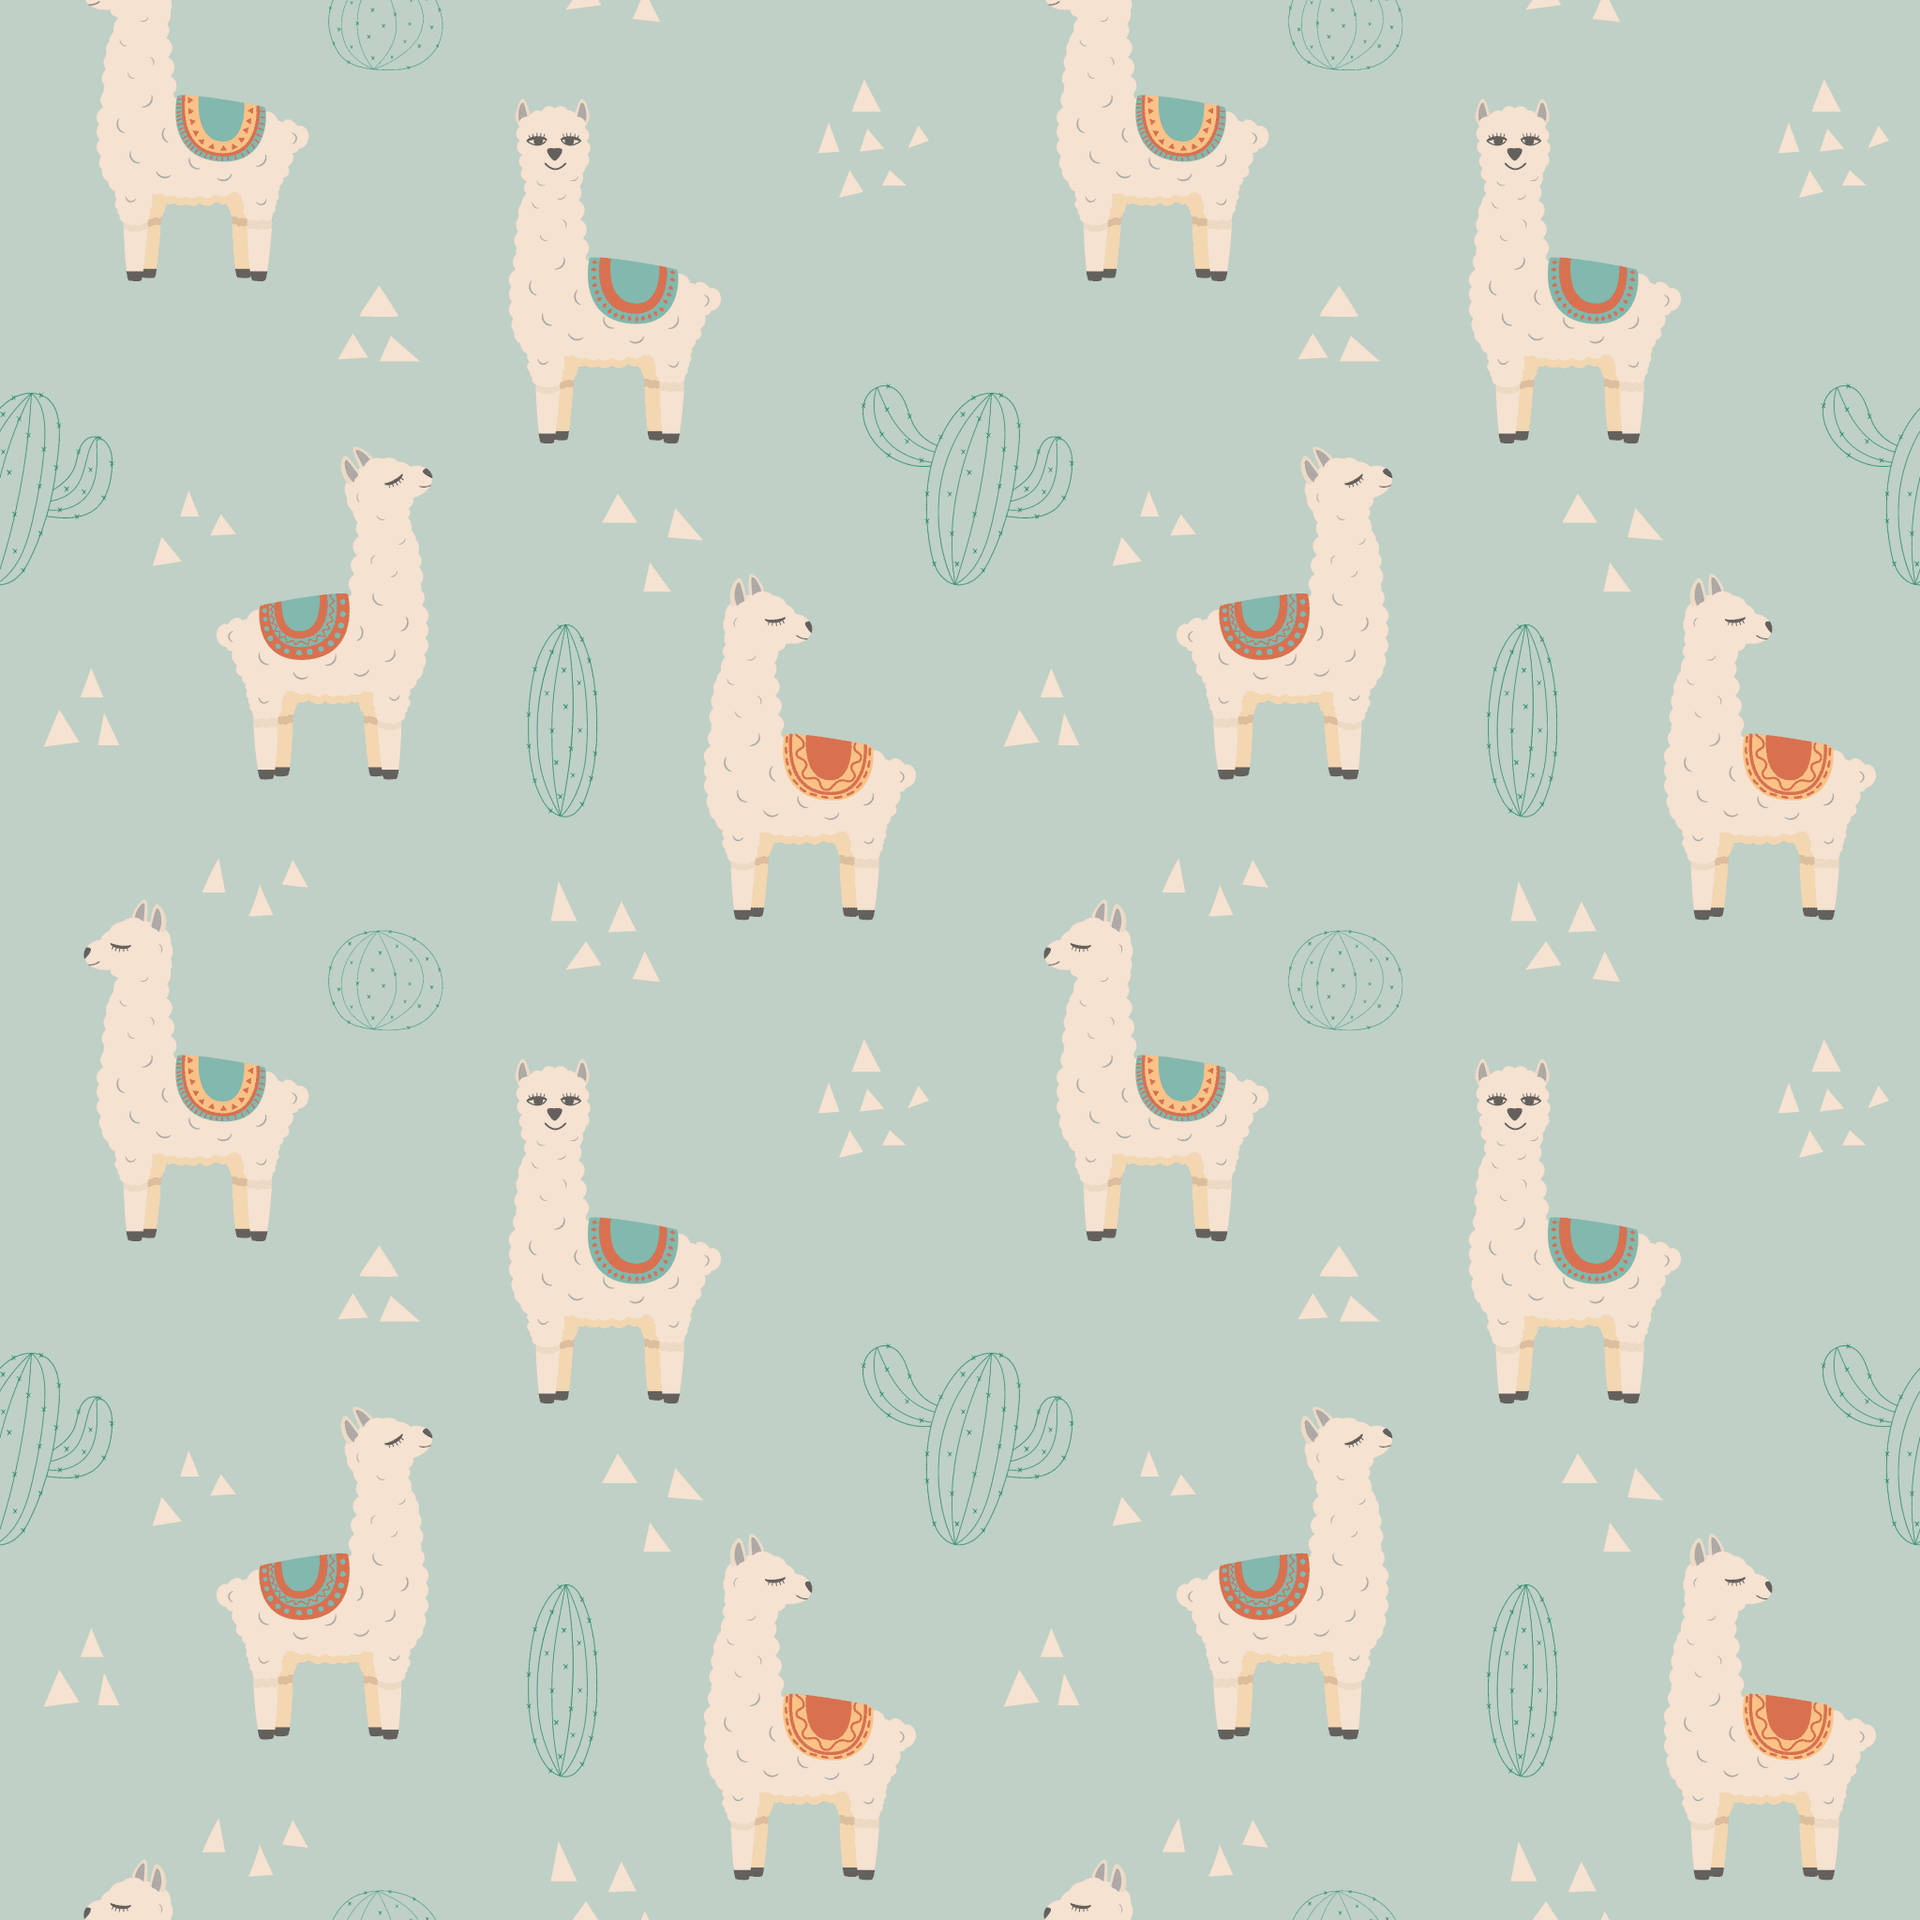 Lama Vector Ikoner Tapet: Et tapet, der viser vector-ikoner af lamaer. Wallpaper